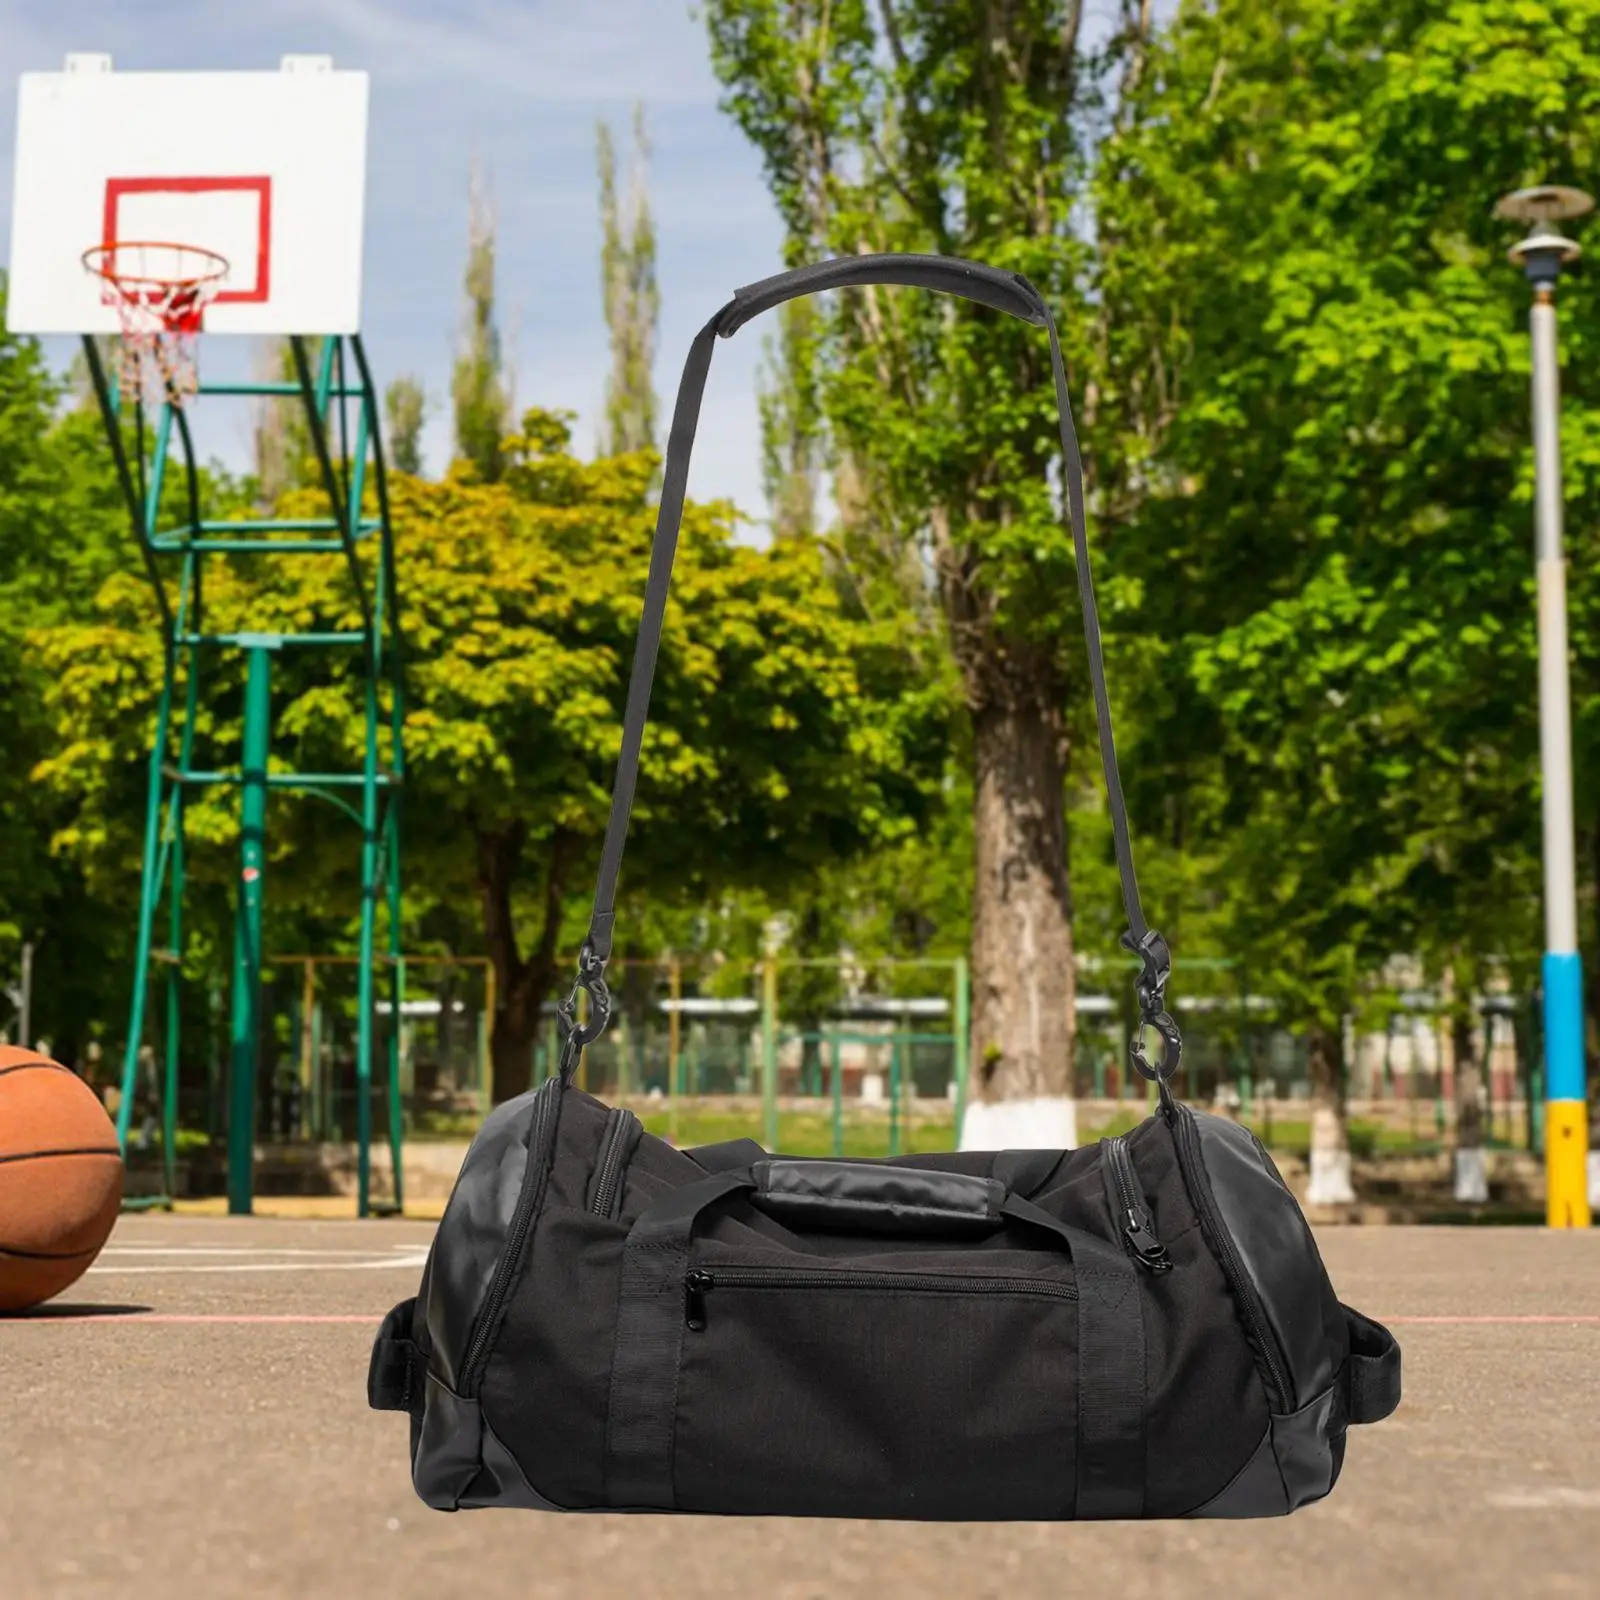 Basketball Bag Backpack Large Capacity Lightweight for Adult Wear Resistant Soccer Backpack Handbag Sports Gym Bag for Swimming